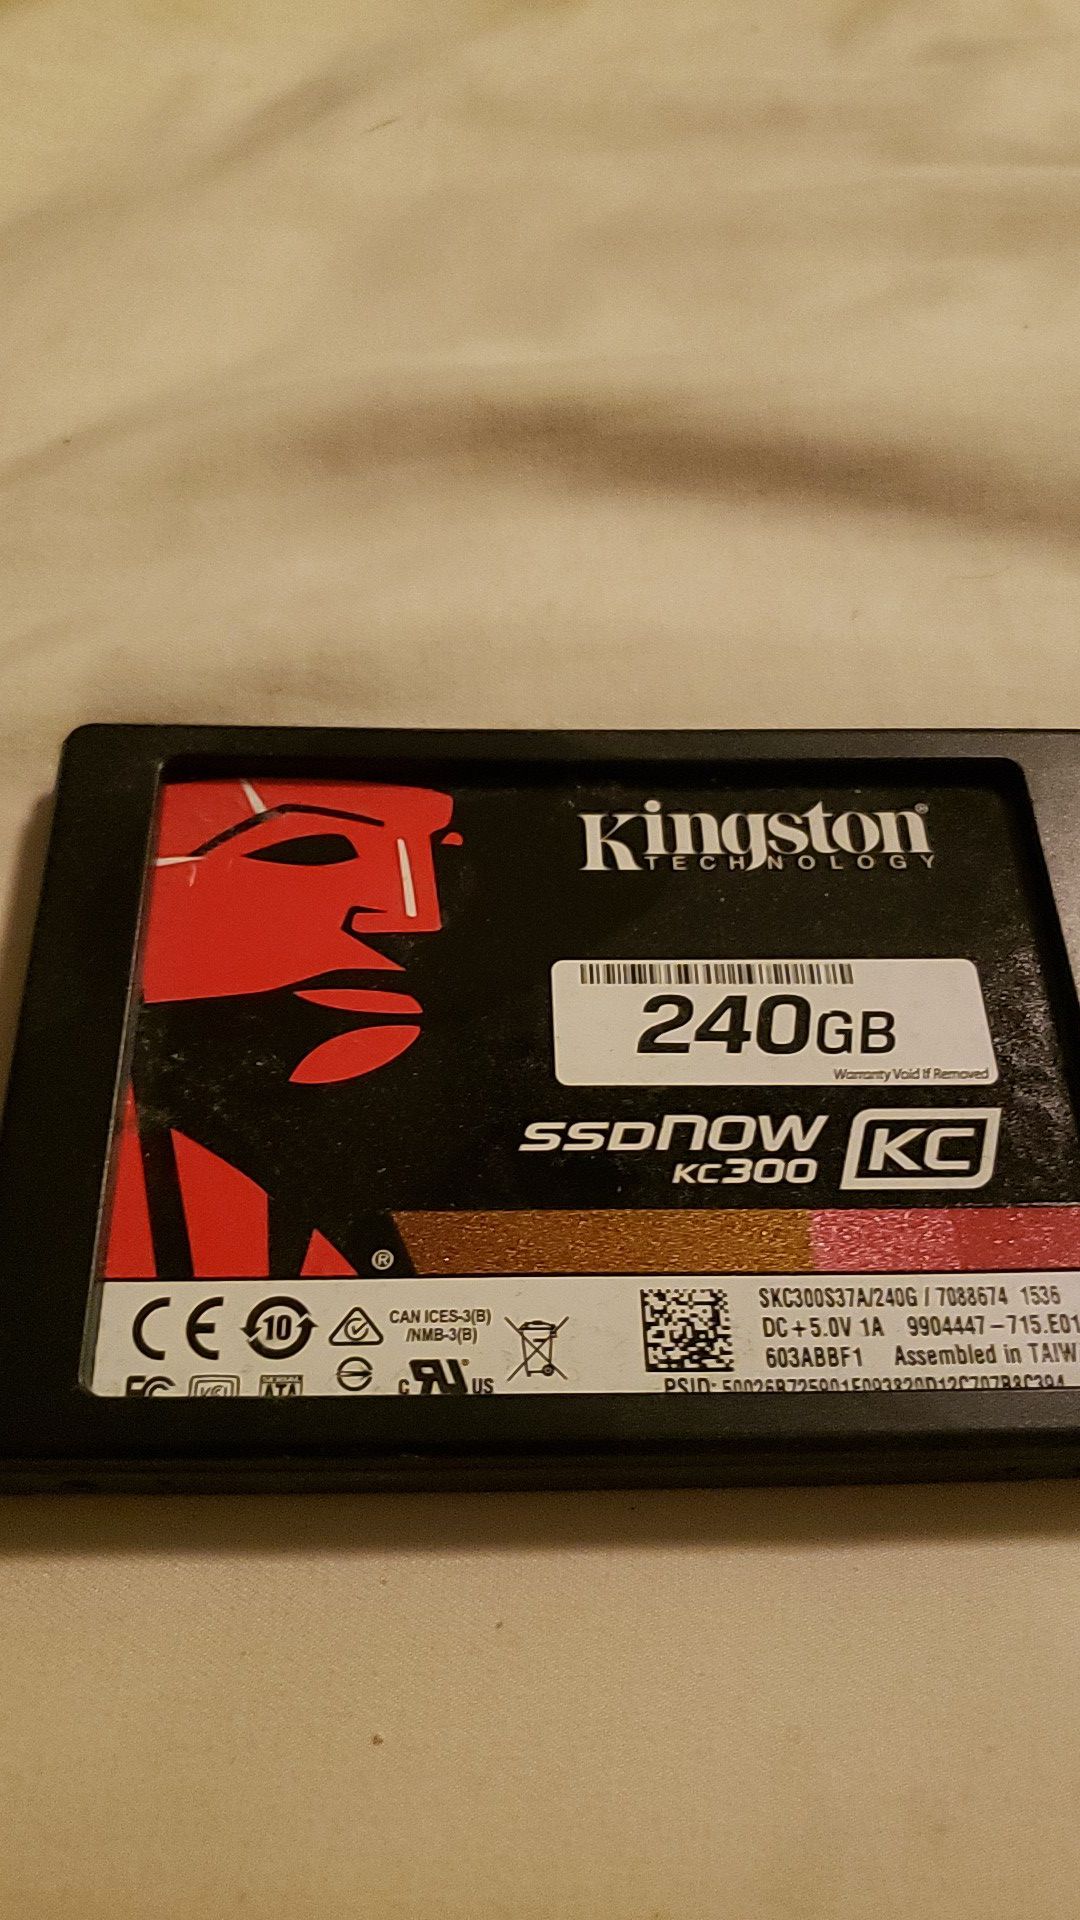 Kingston laptop SSD 240gb